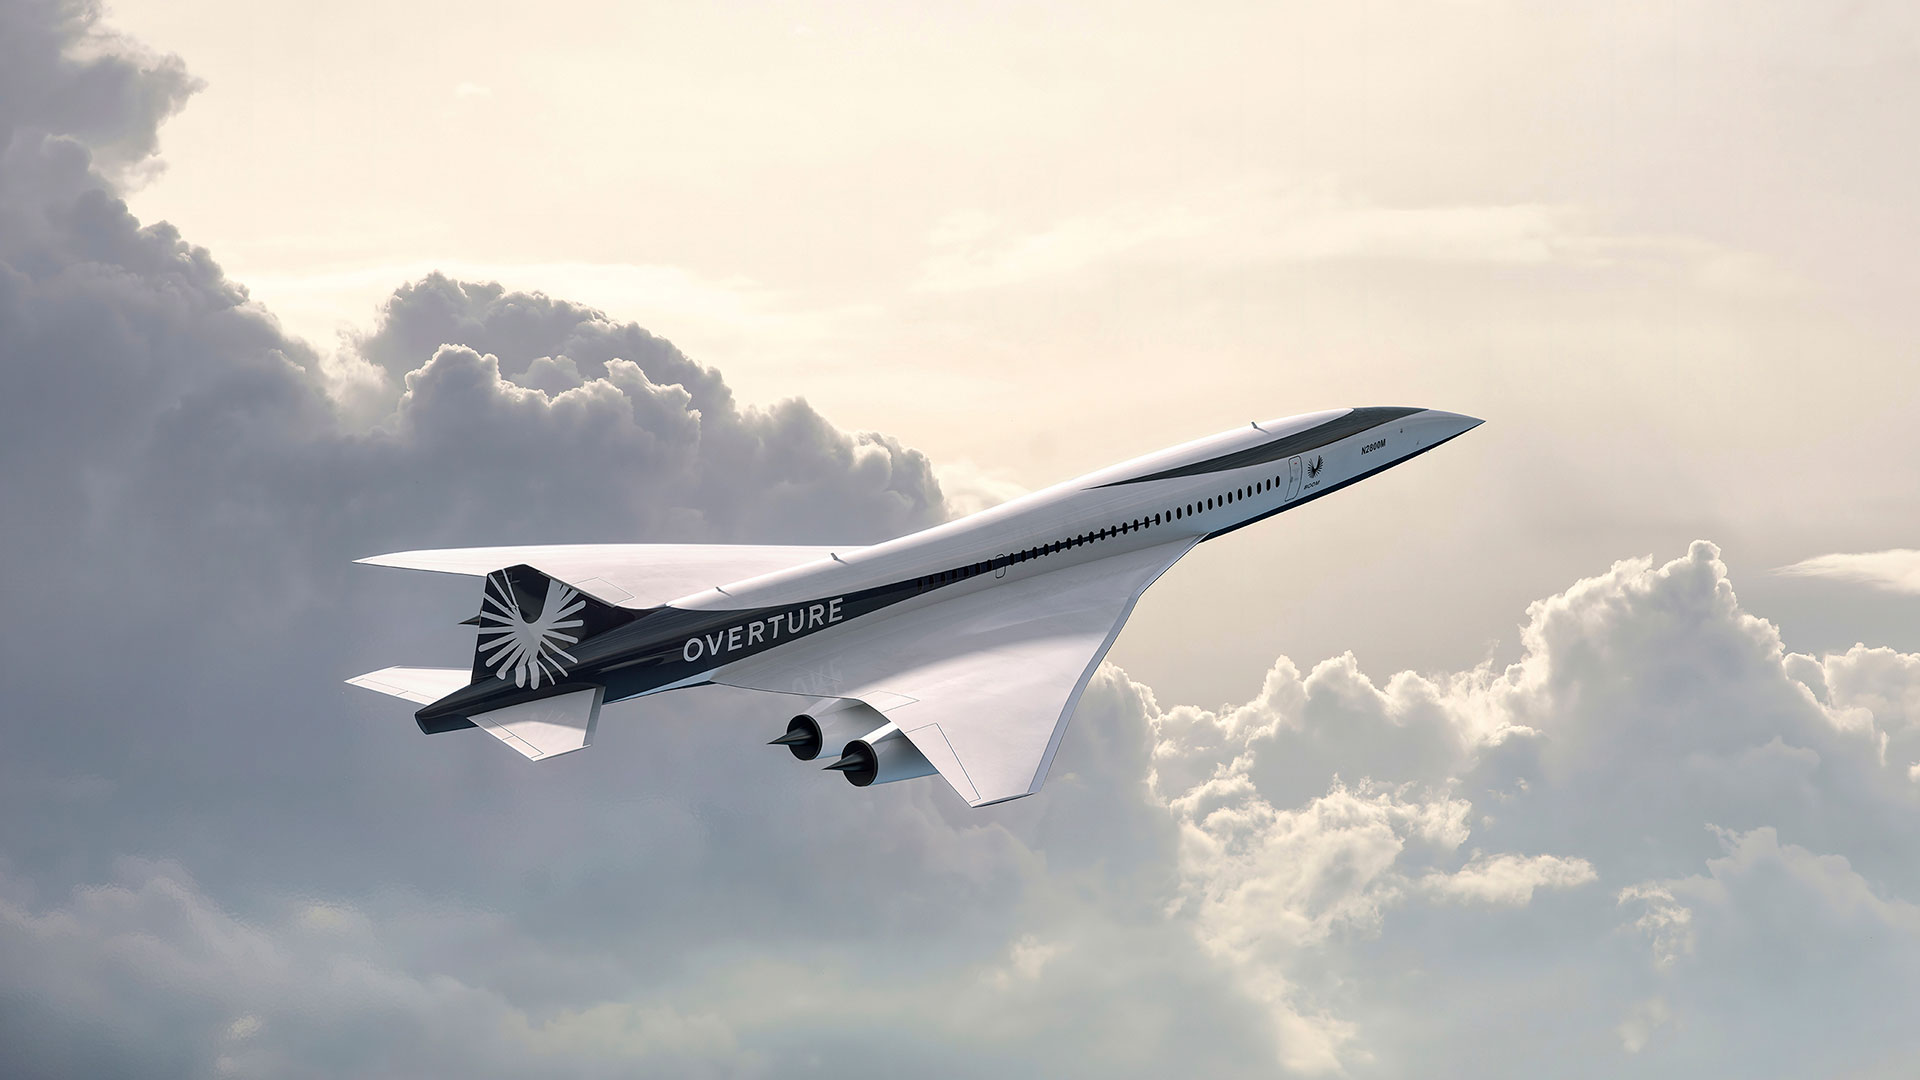 American Airlines informó que acordó la compra de hasta 20 aviones supersónicos que aún están en fase de diseño y a los que les faltan años para volar (Boom Supersonic via AP)